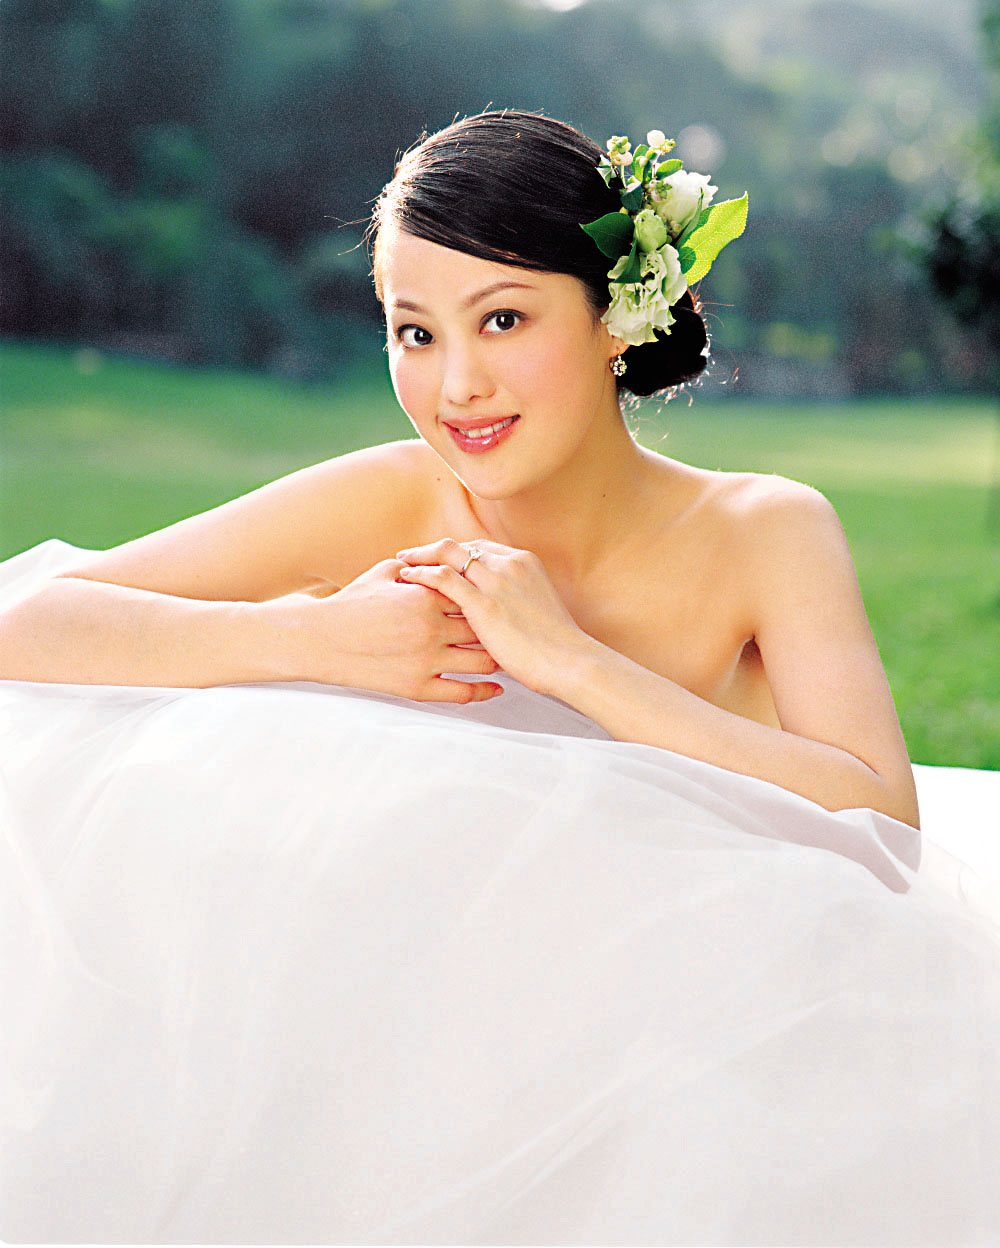 章小蕙更穿上婚纱推销「七日结婚修身疗程」。